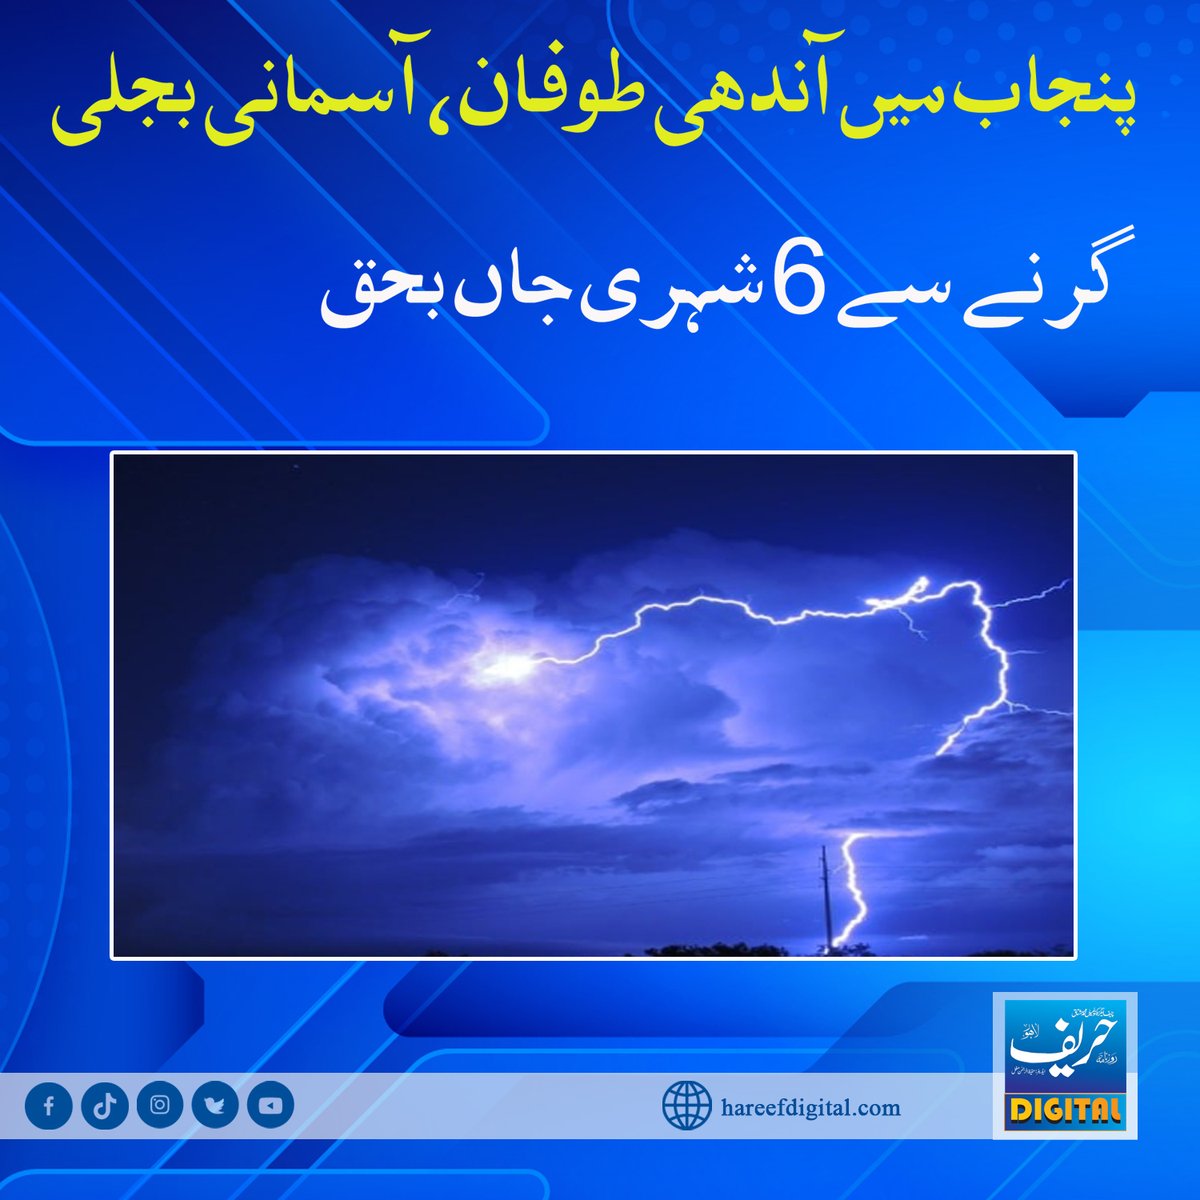 پنجاب میں آندھی طوفان، آسمانی بجلی گرنے سے 6 شہری جاں بحق
hareefdigital.com/in-punjab-wind…
#hareefdigital
#Pakistan
#punjab 
#windstorm
#skylightning
#falls
#6person
#death #پچیس_مئی_یوم_فسطایت